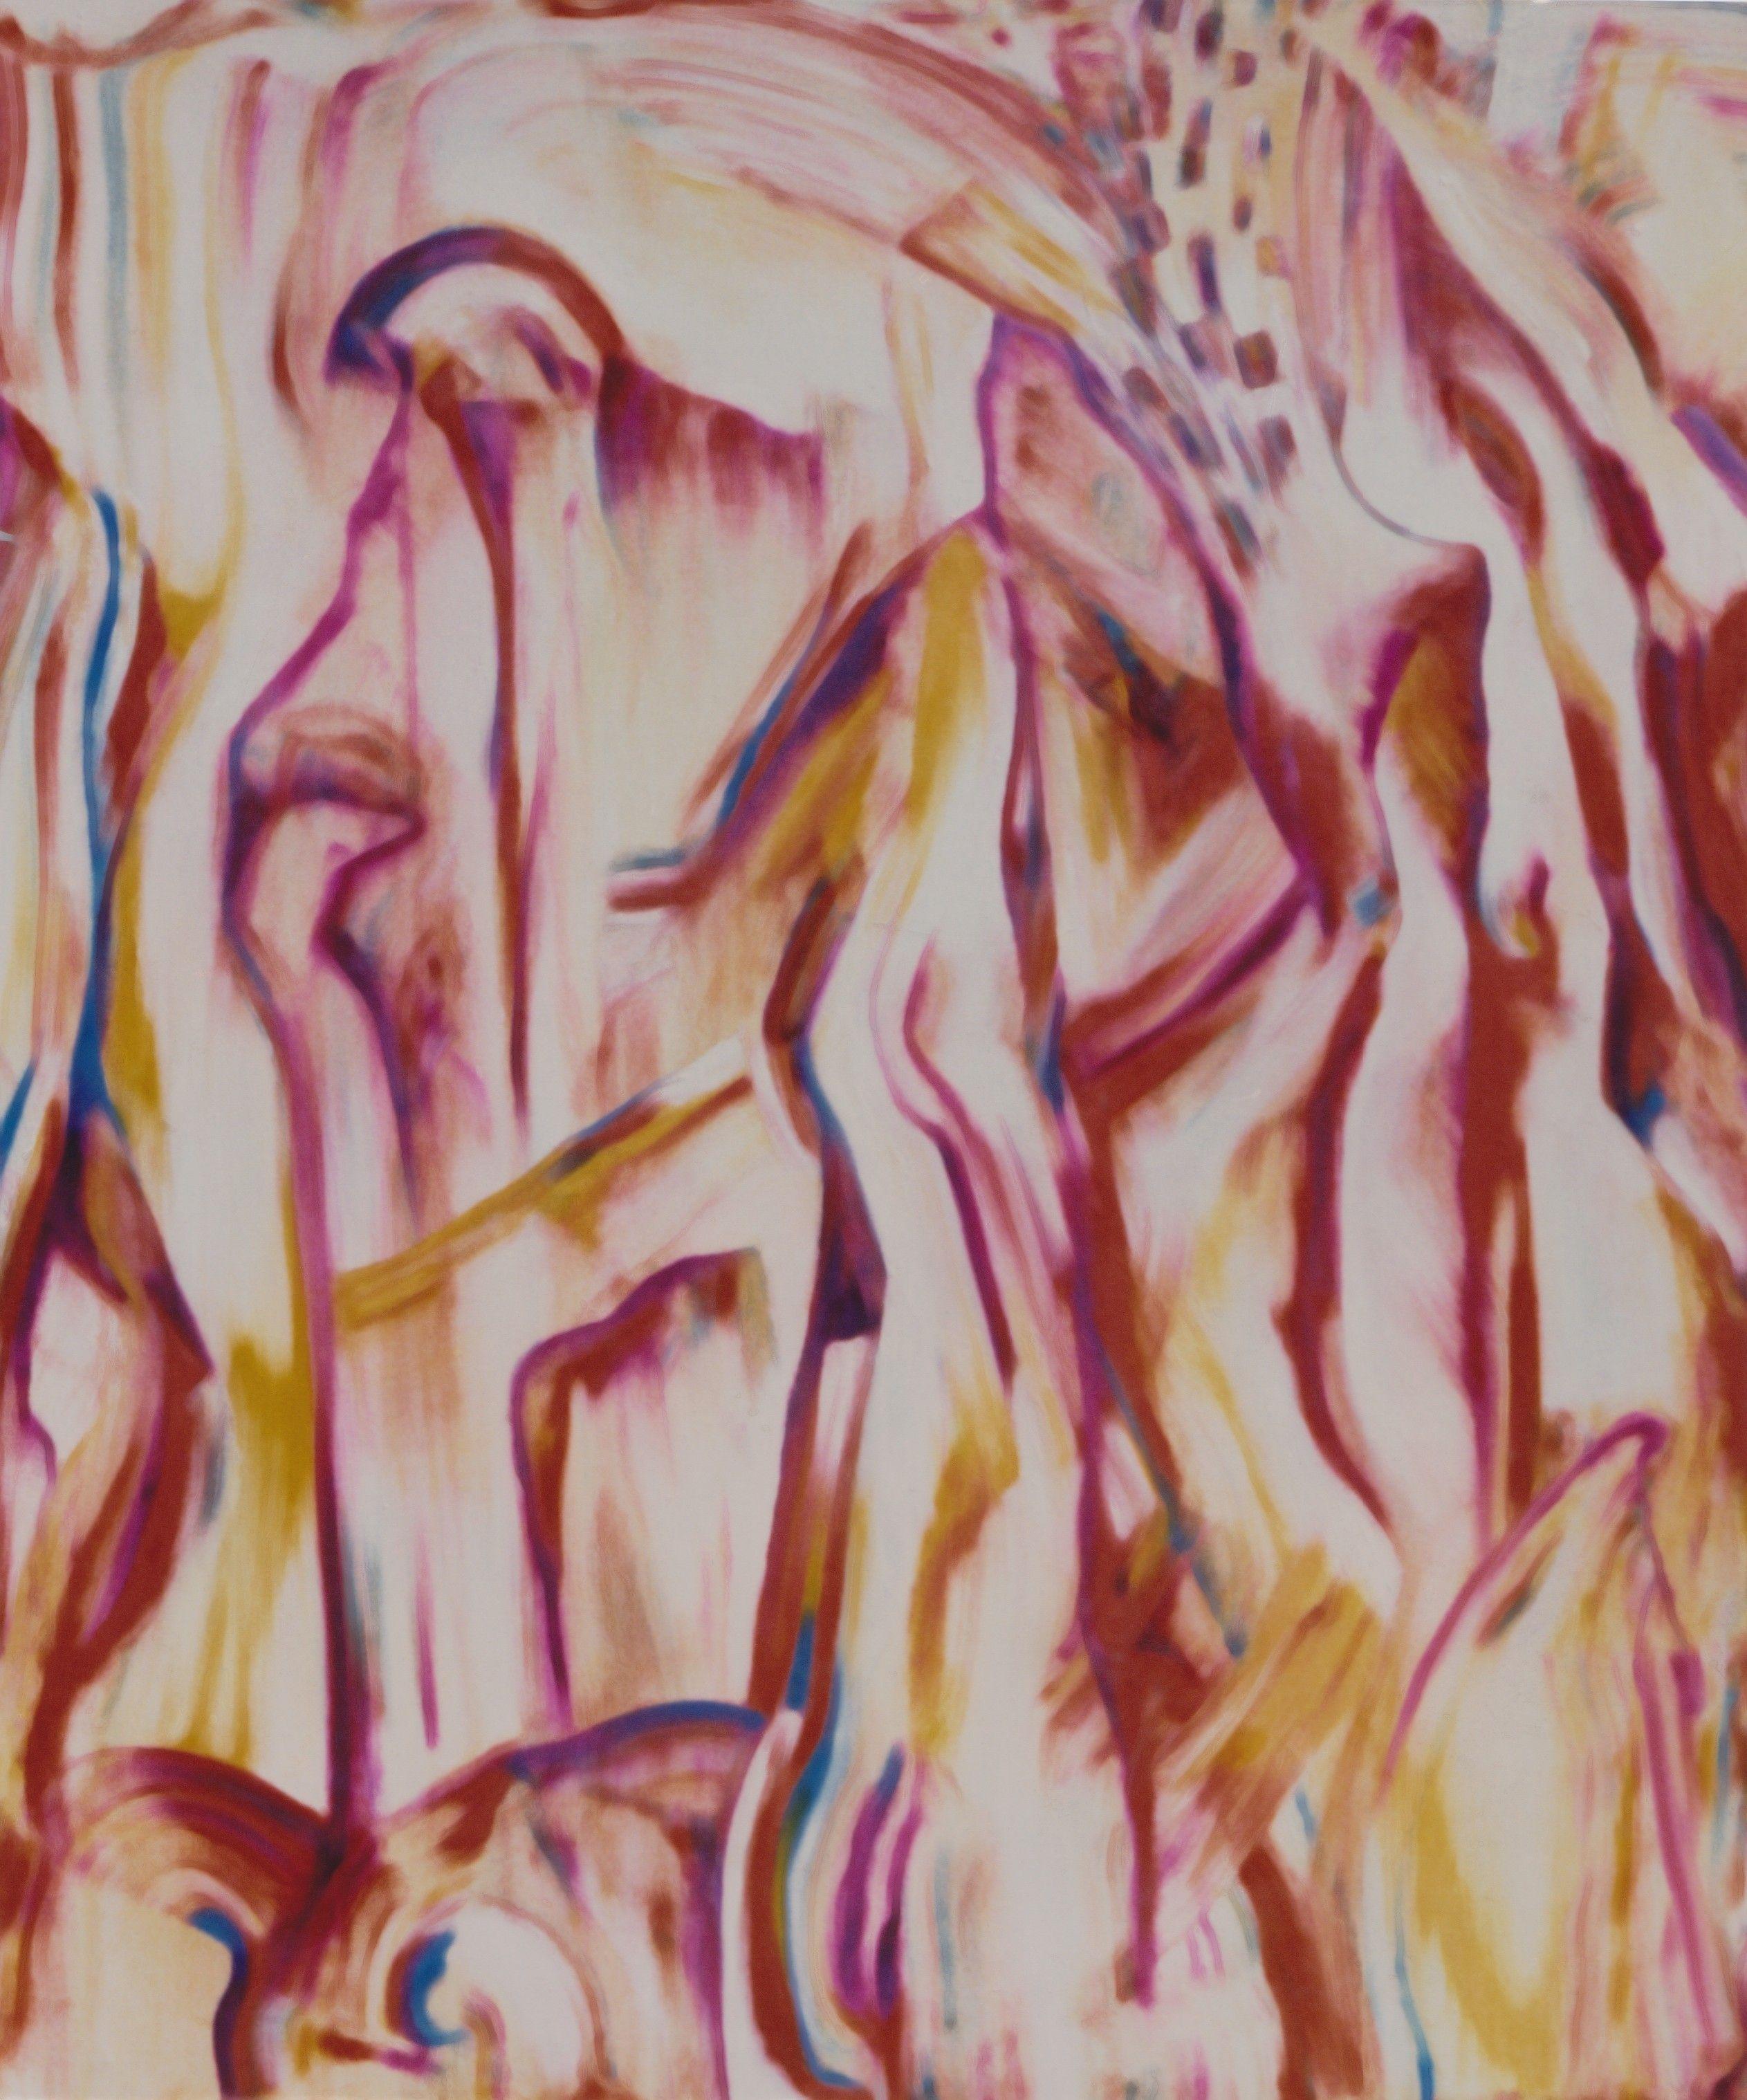 Peinture, huile sur toile « Blown Away » (L'air soufflé) - Painting de Gregg Simpson